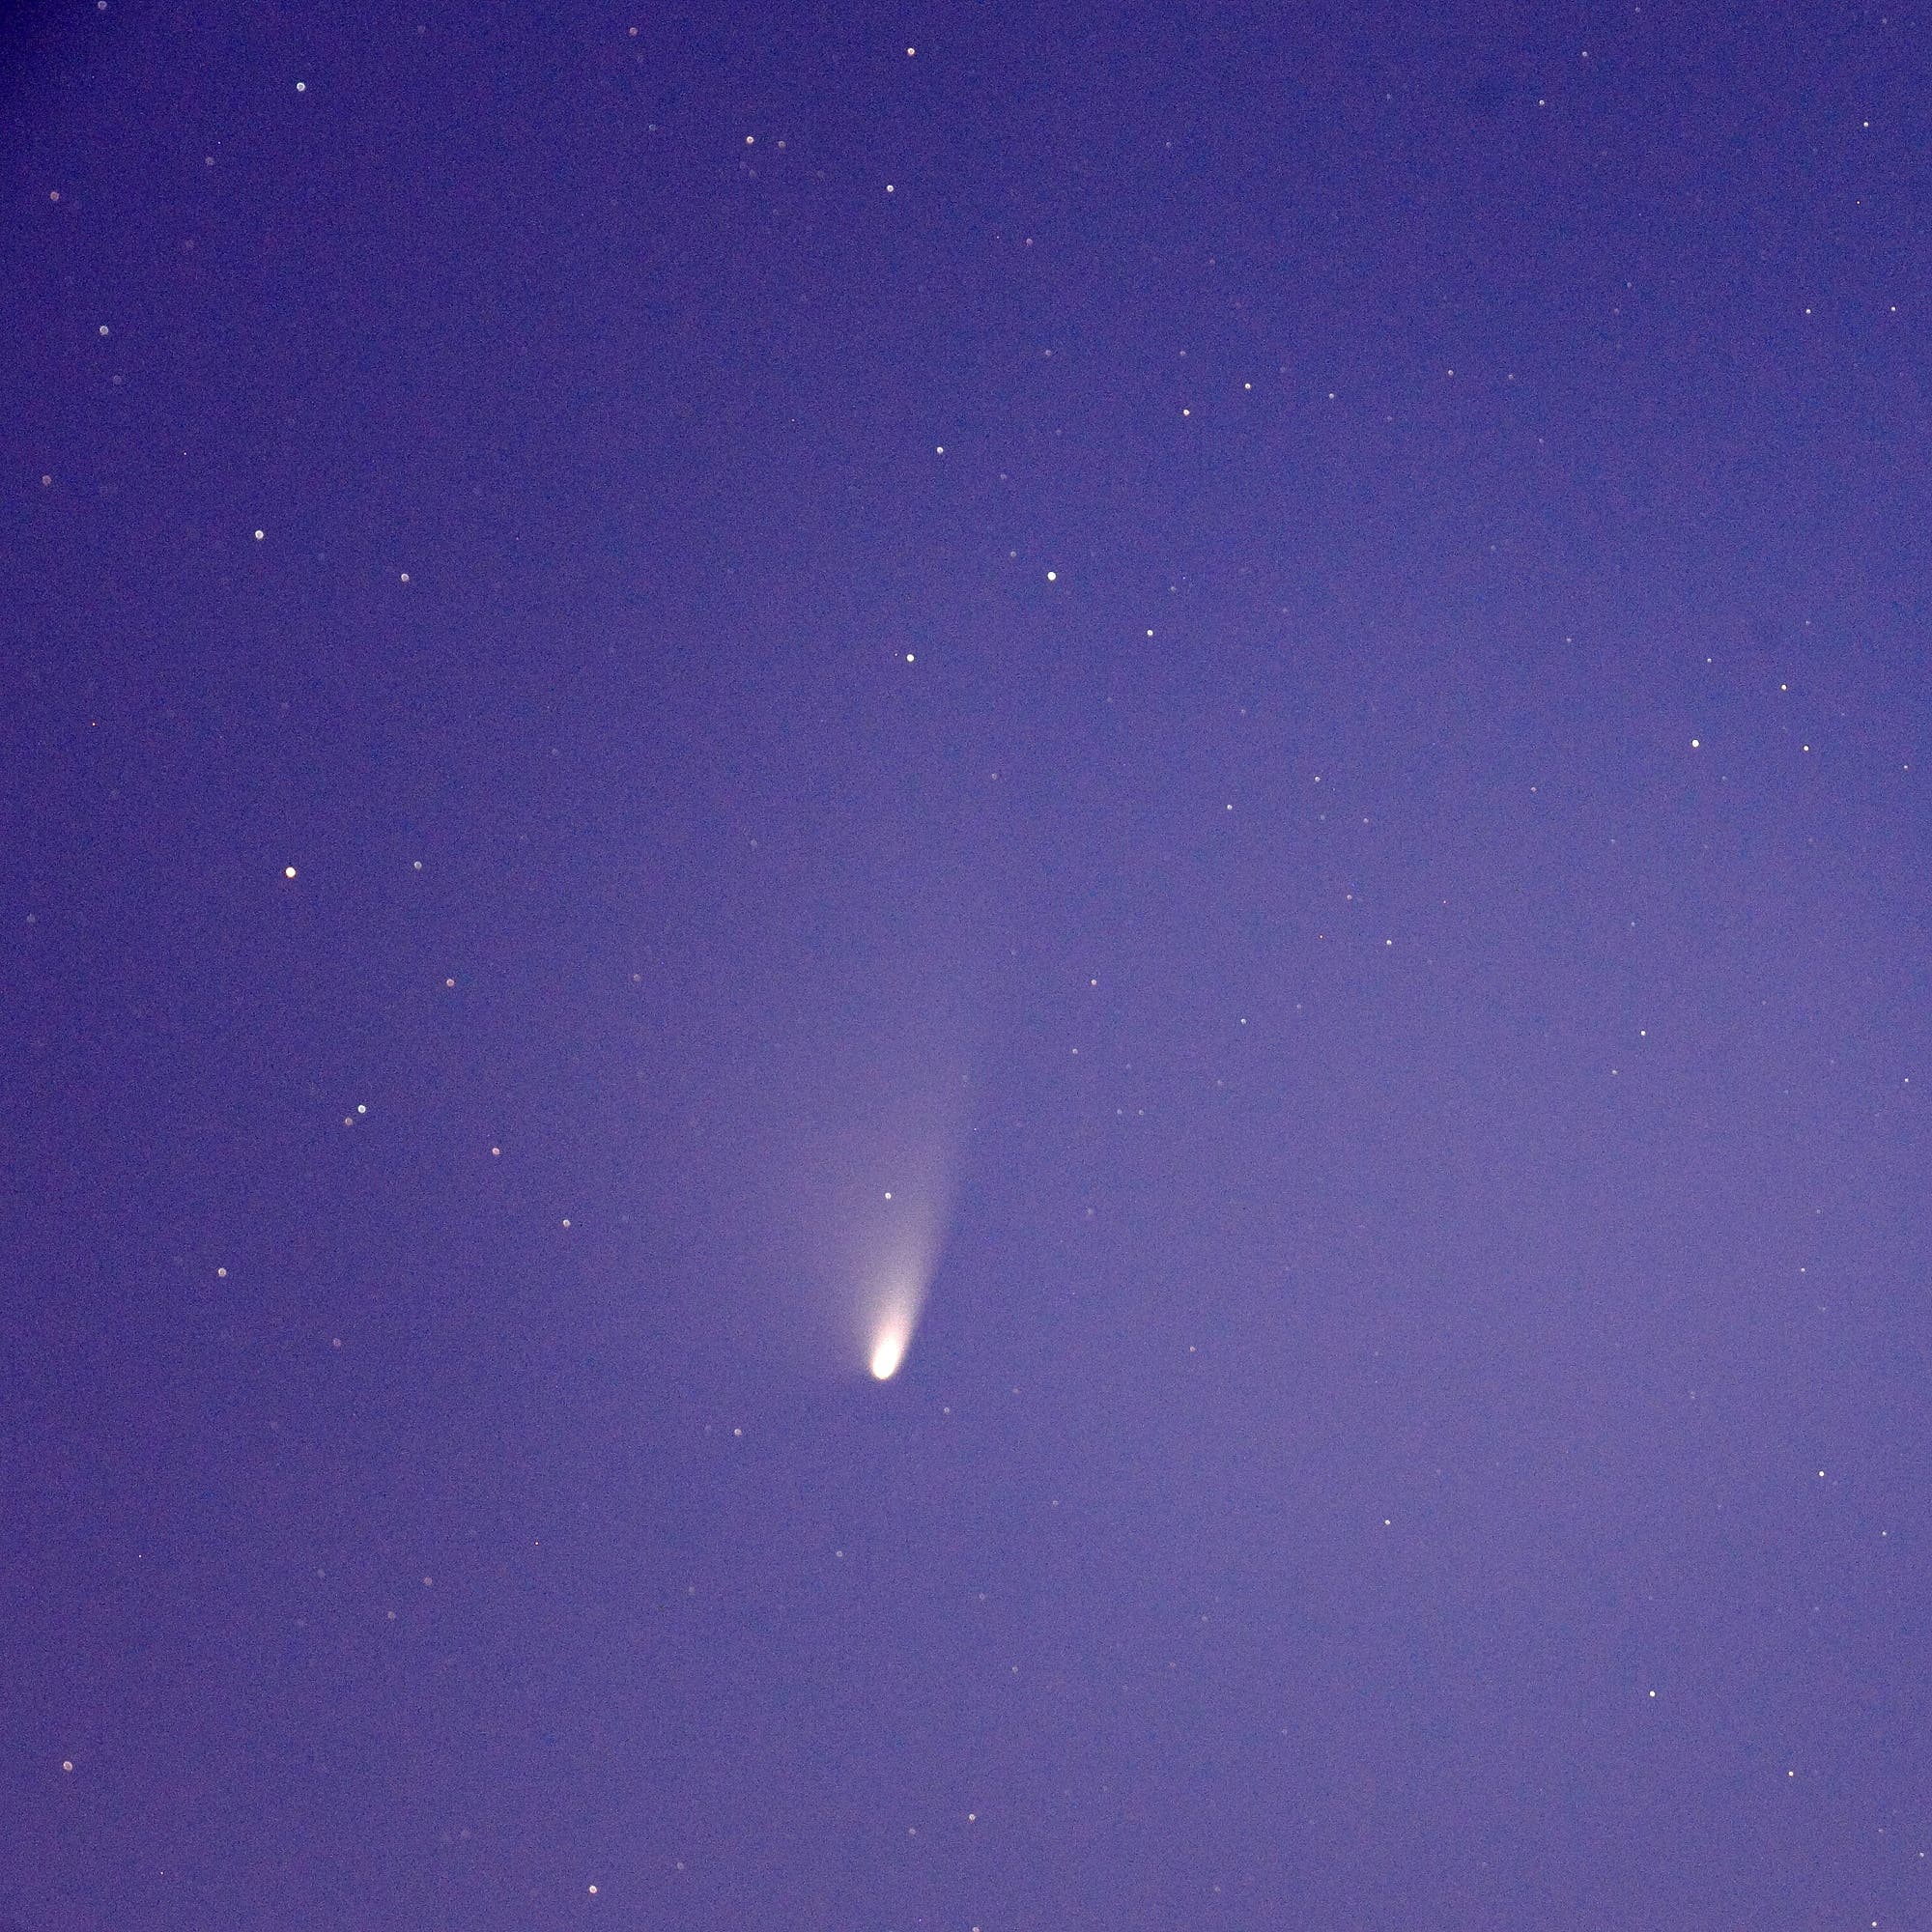 Komet PANSTARRS am 24. März 2013